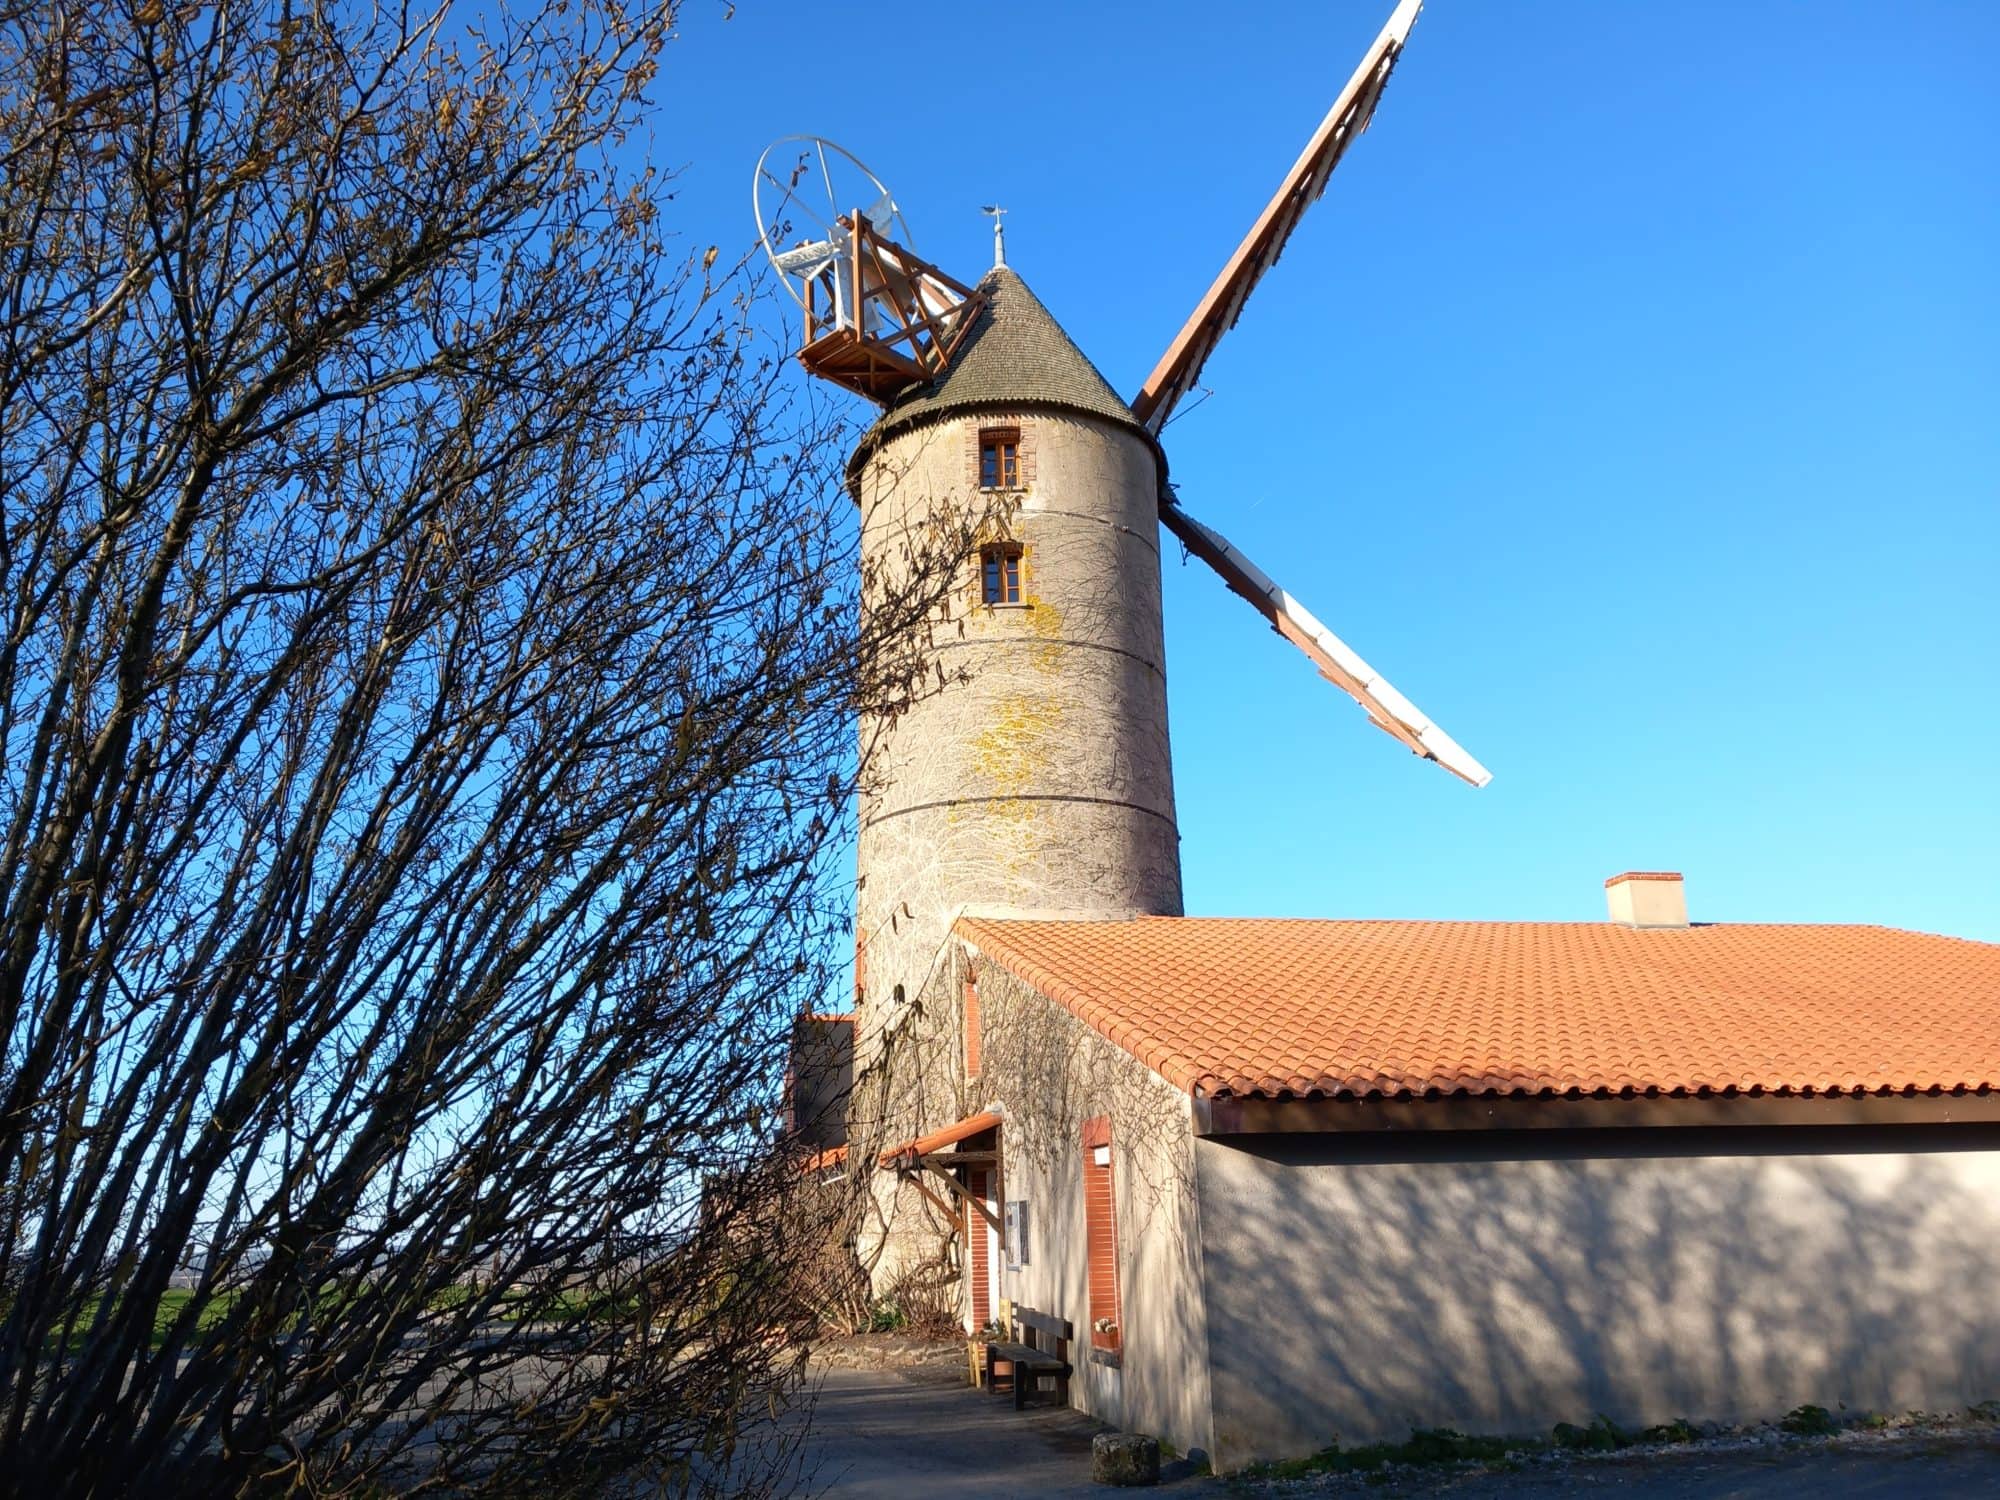 De paille et de bois, chambres d'hôtes et gîte écologique en Anjou Val de Loire : Moulin de l'Epinay, La chapelle Saint-Florent